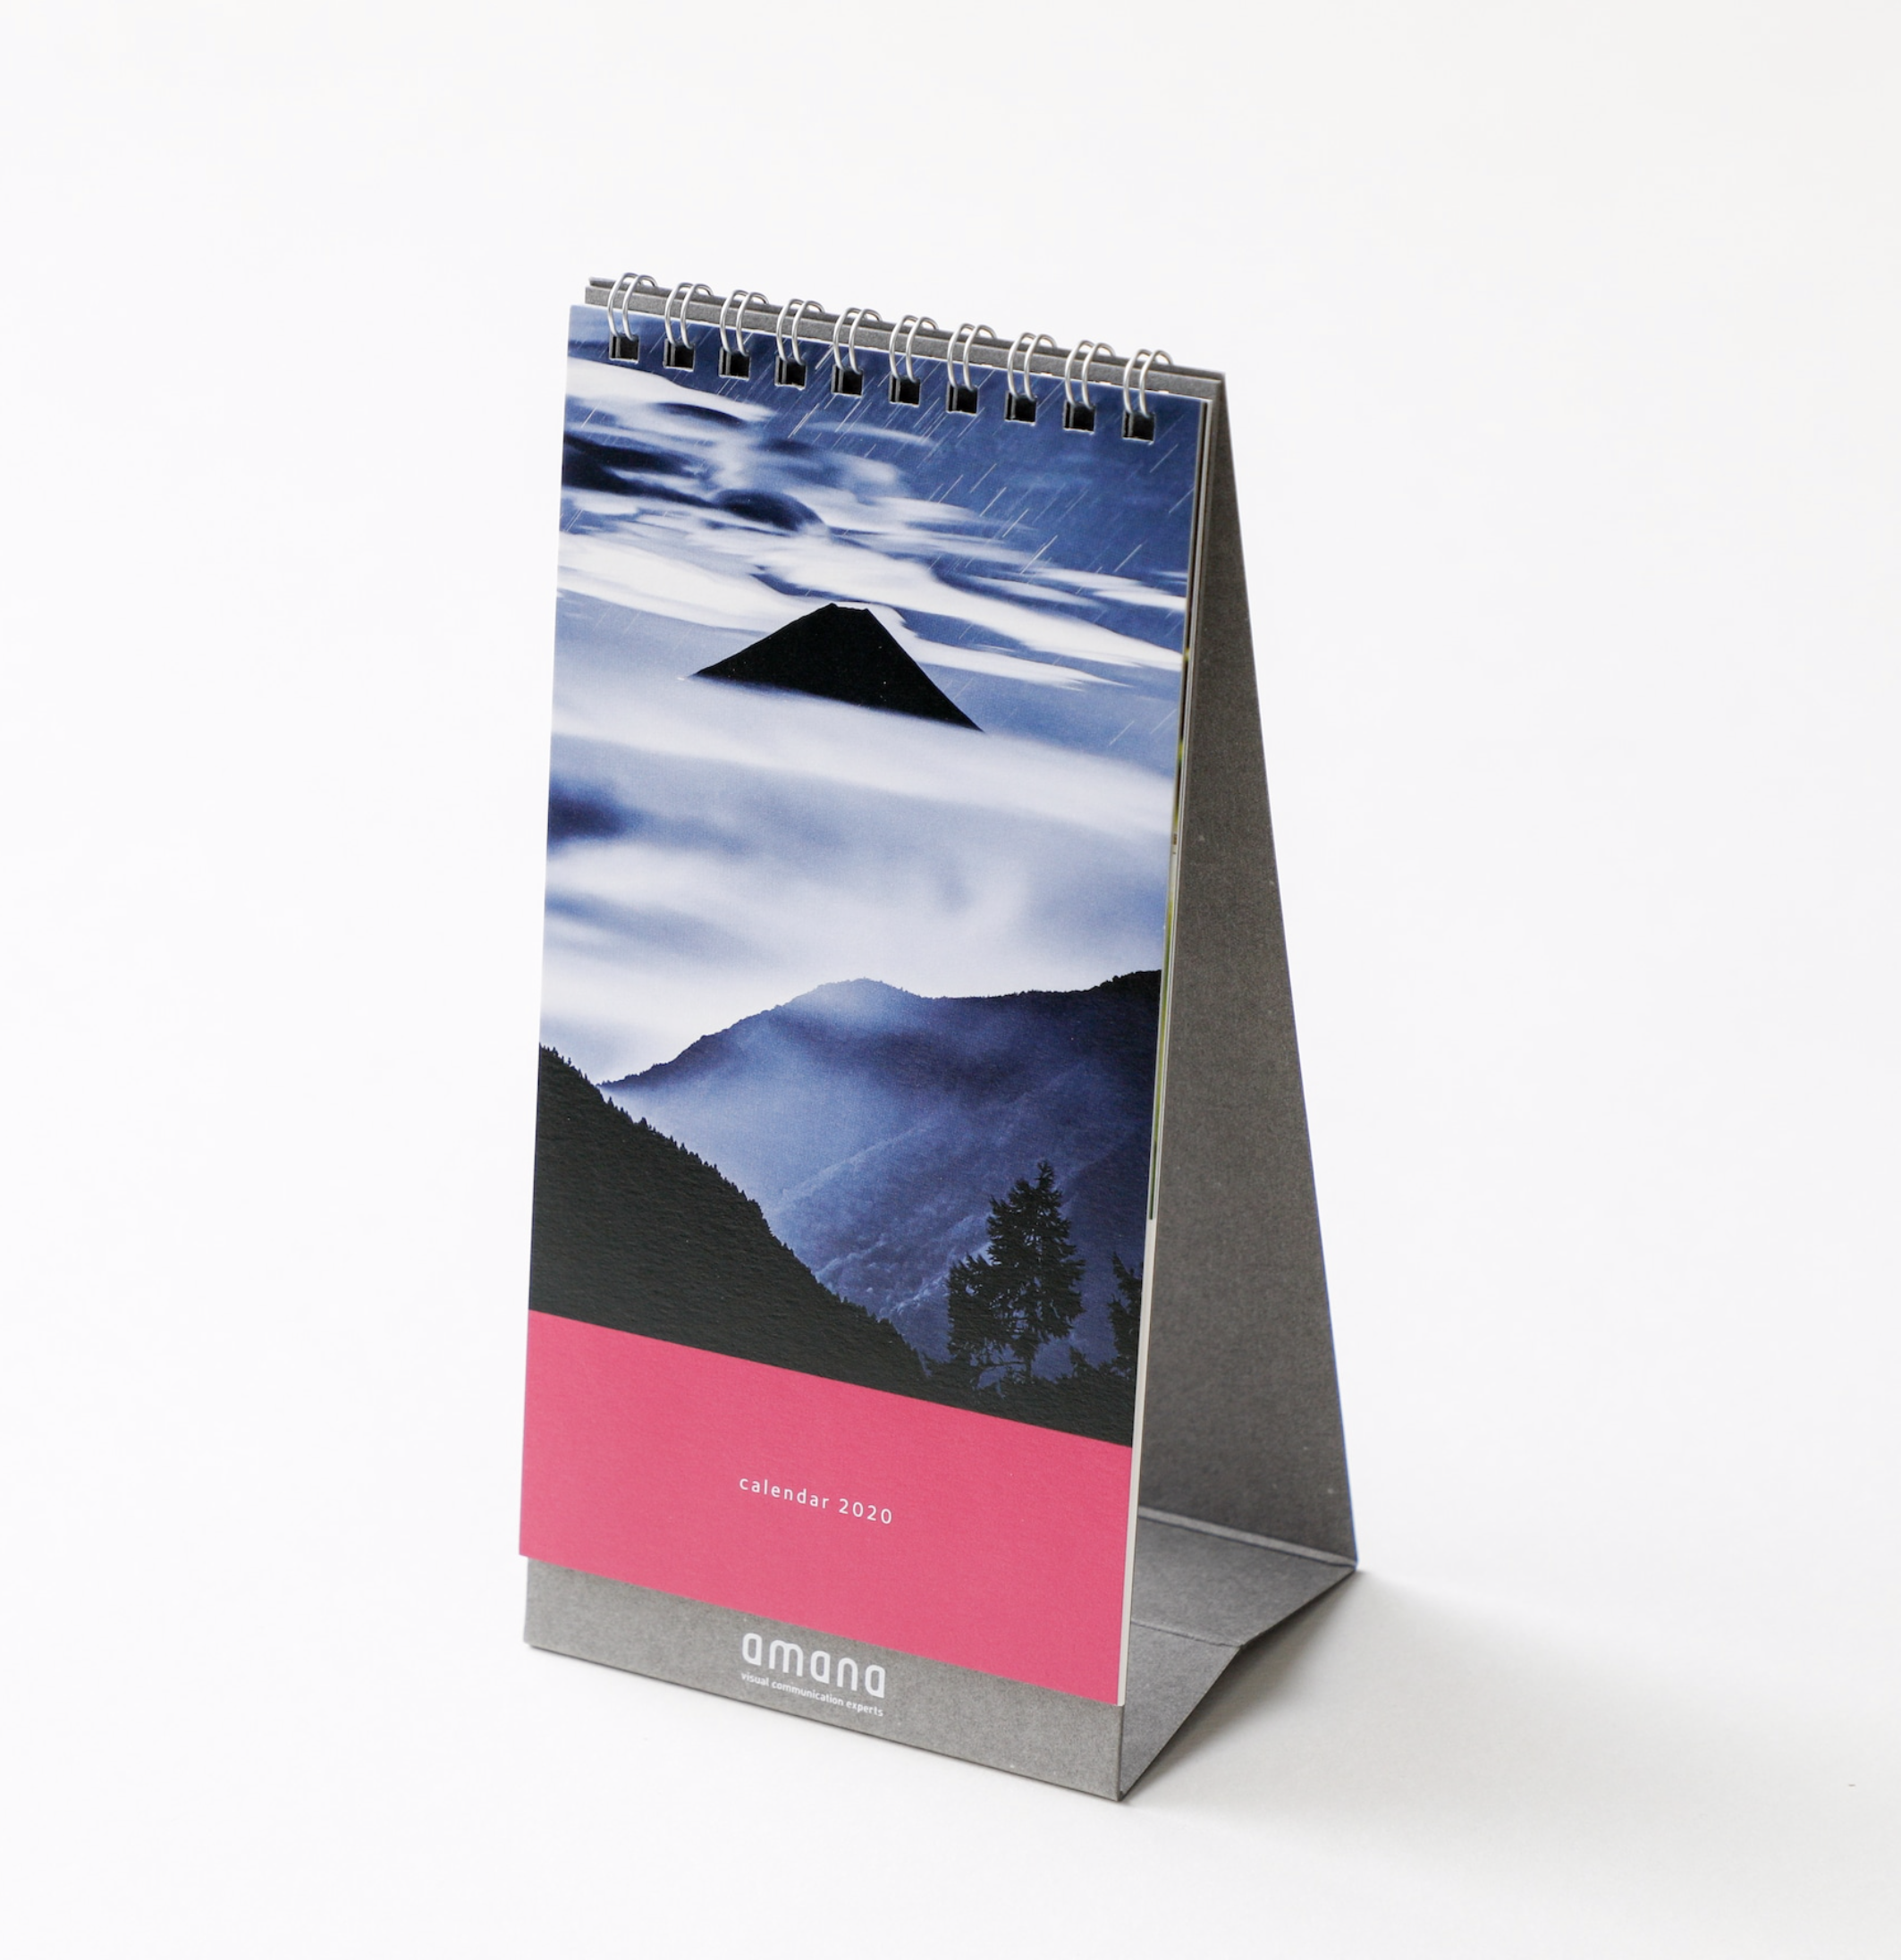 Blue Ink シリーズの富士山がamana 2020 カレンダーの表紙に採用されています